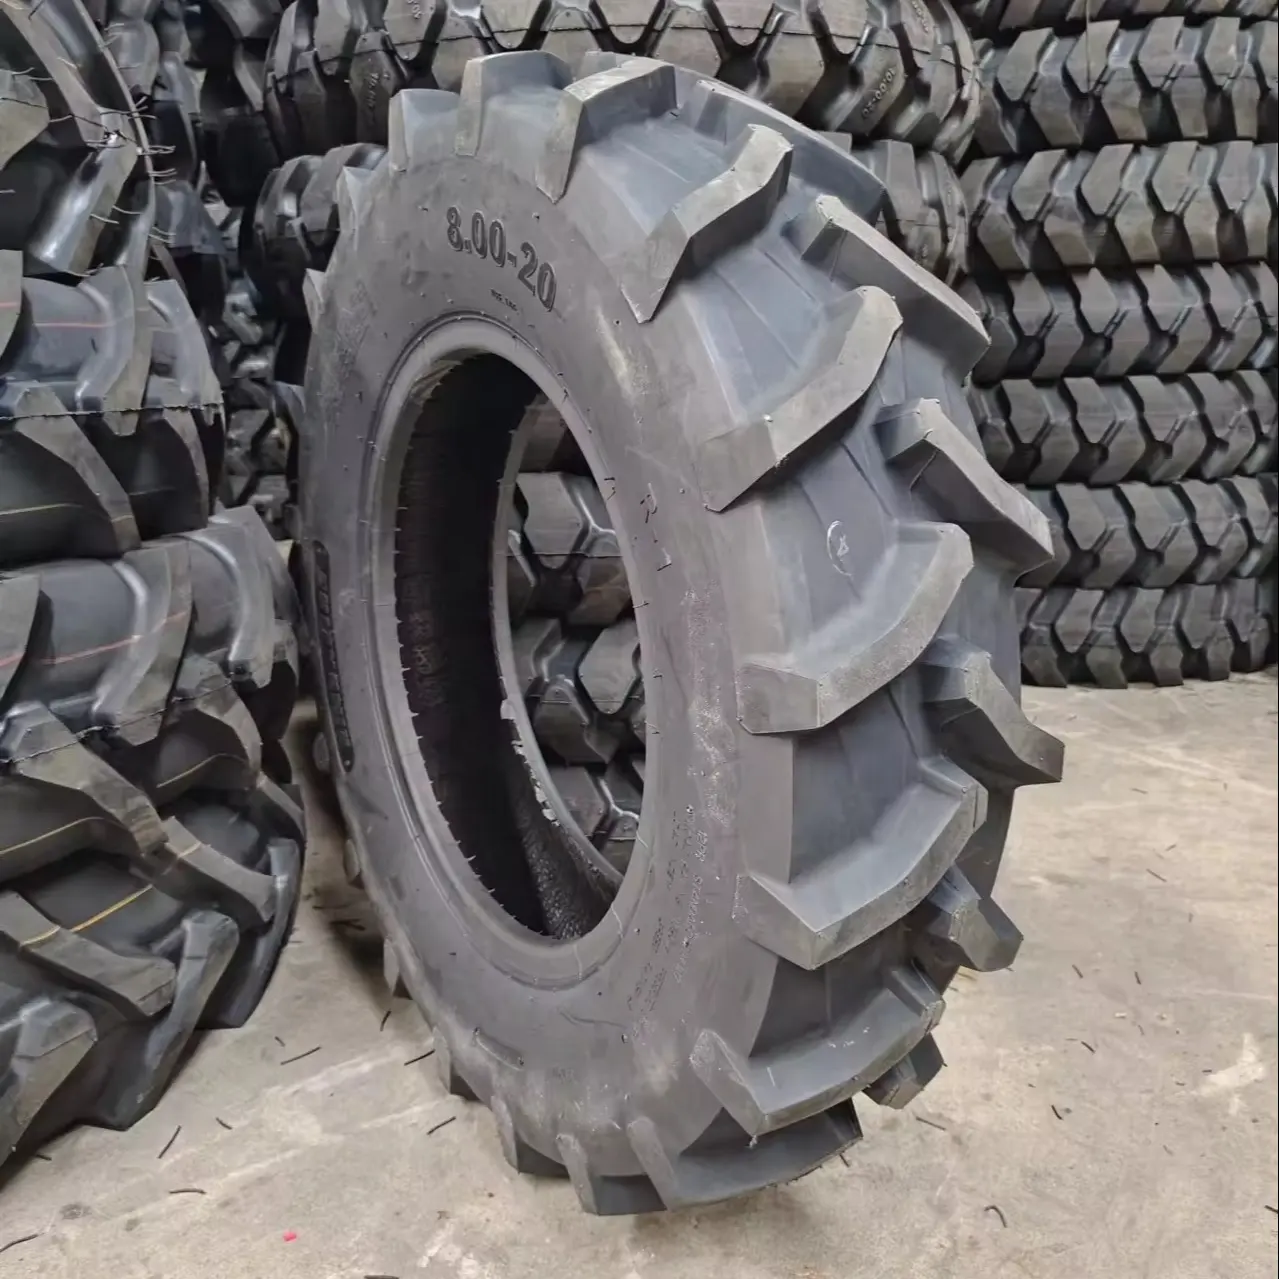 Schlussverkauf AGR-Traktorreifen 8,00-20 R1 Muster Landwirtschaftsreifen günstig und hochwertiger Reifen